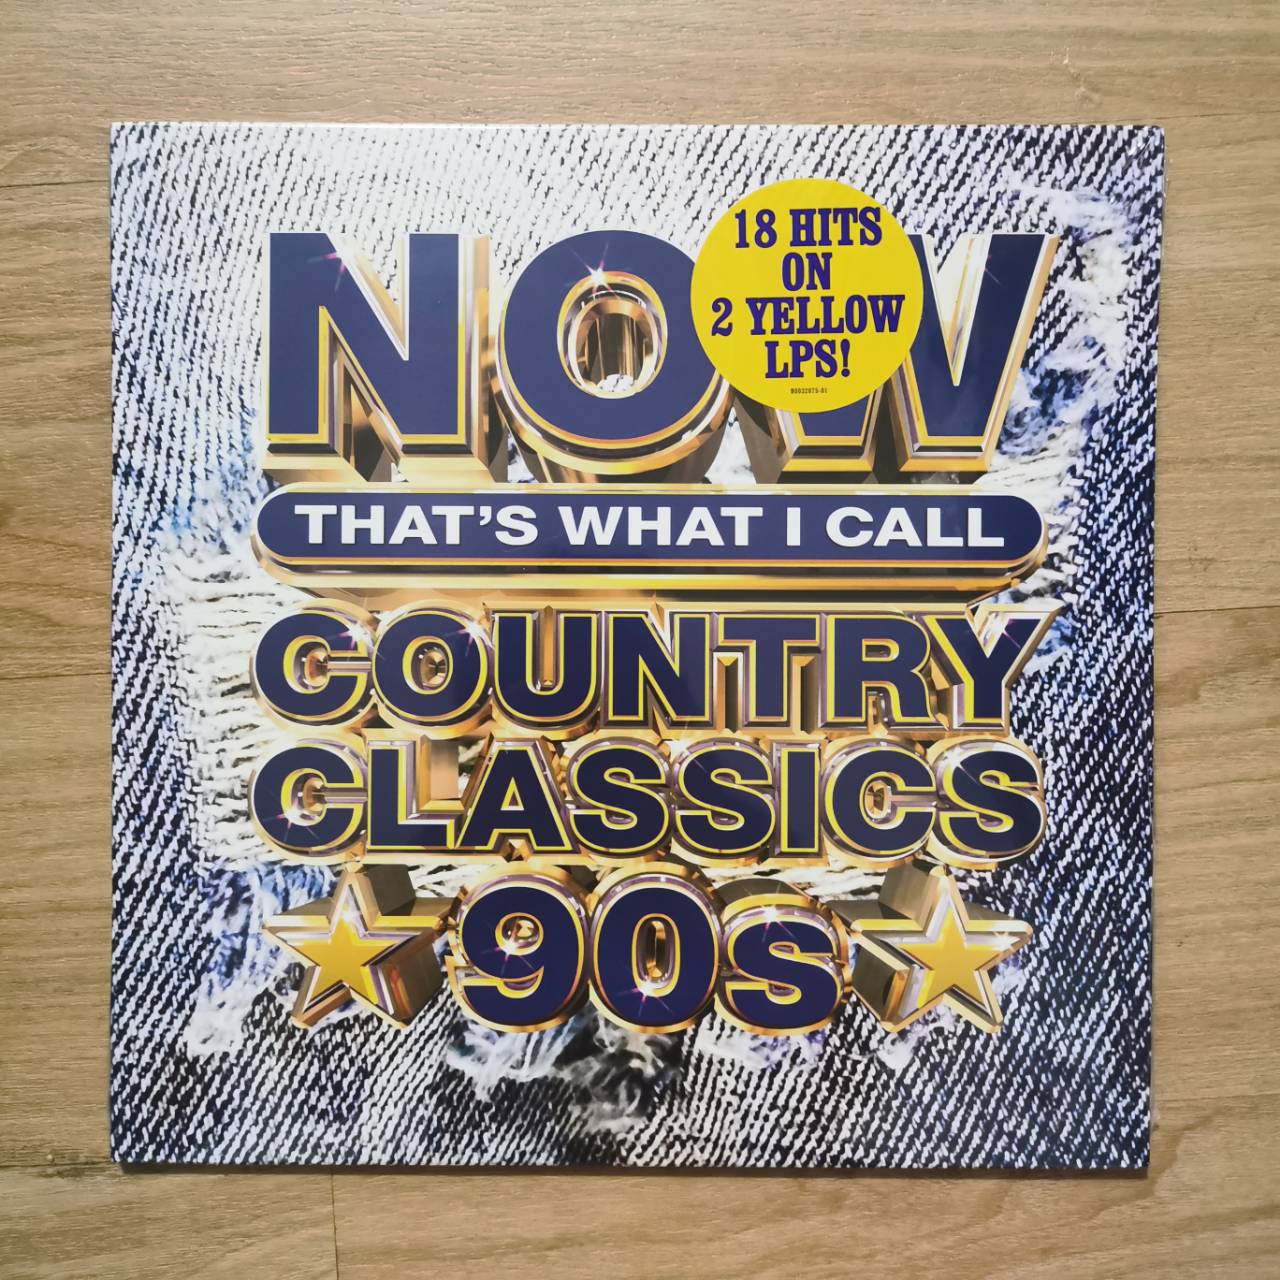 แผ่นเสียง Now​ Country​ classics​ 90s 18​hits​ 2lp.yellow vinyl แผ่นเสียงใหม่ซีล